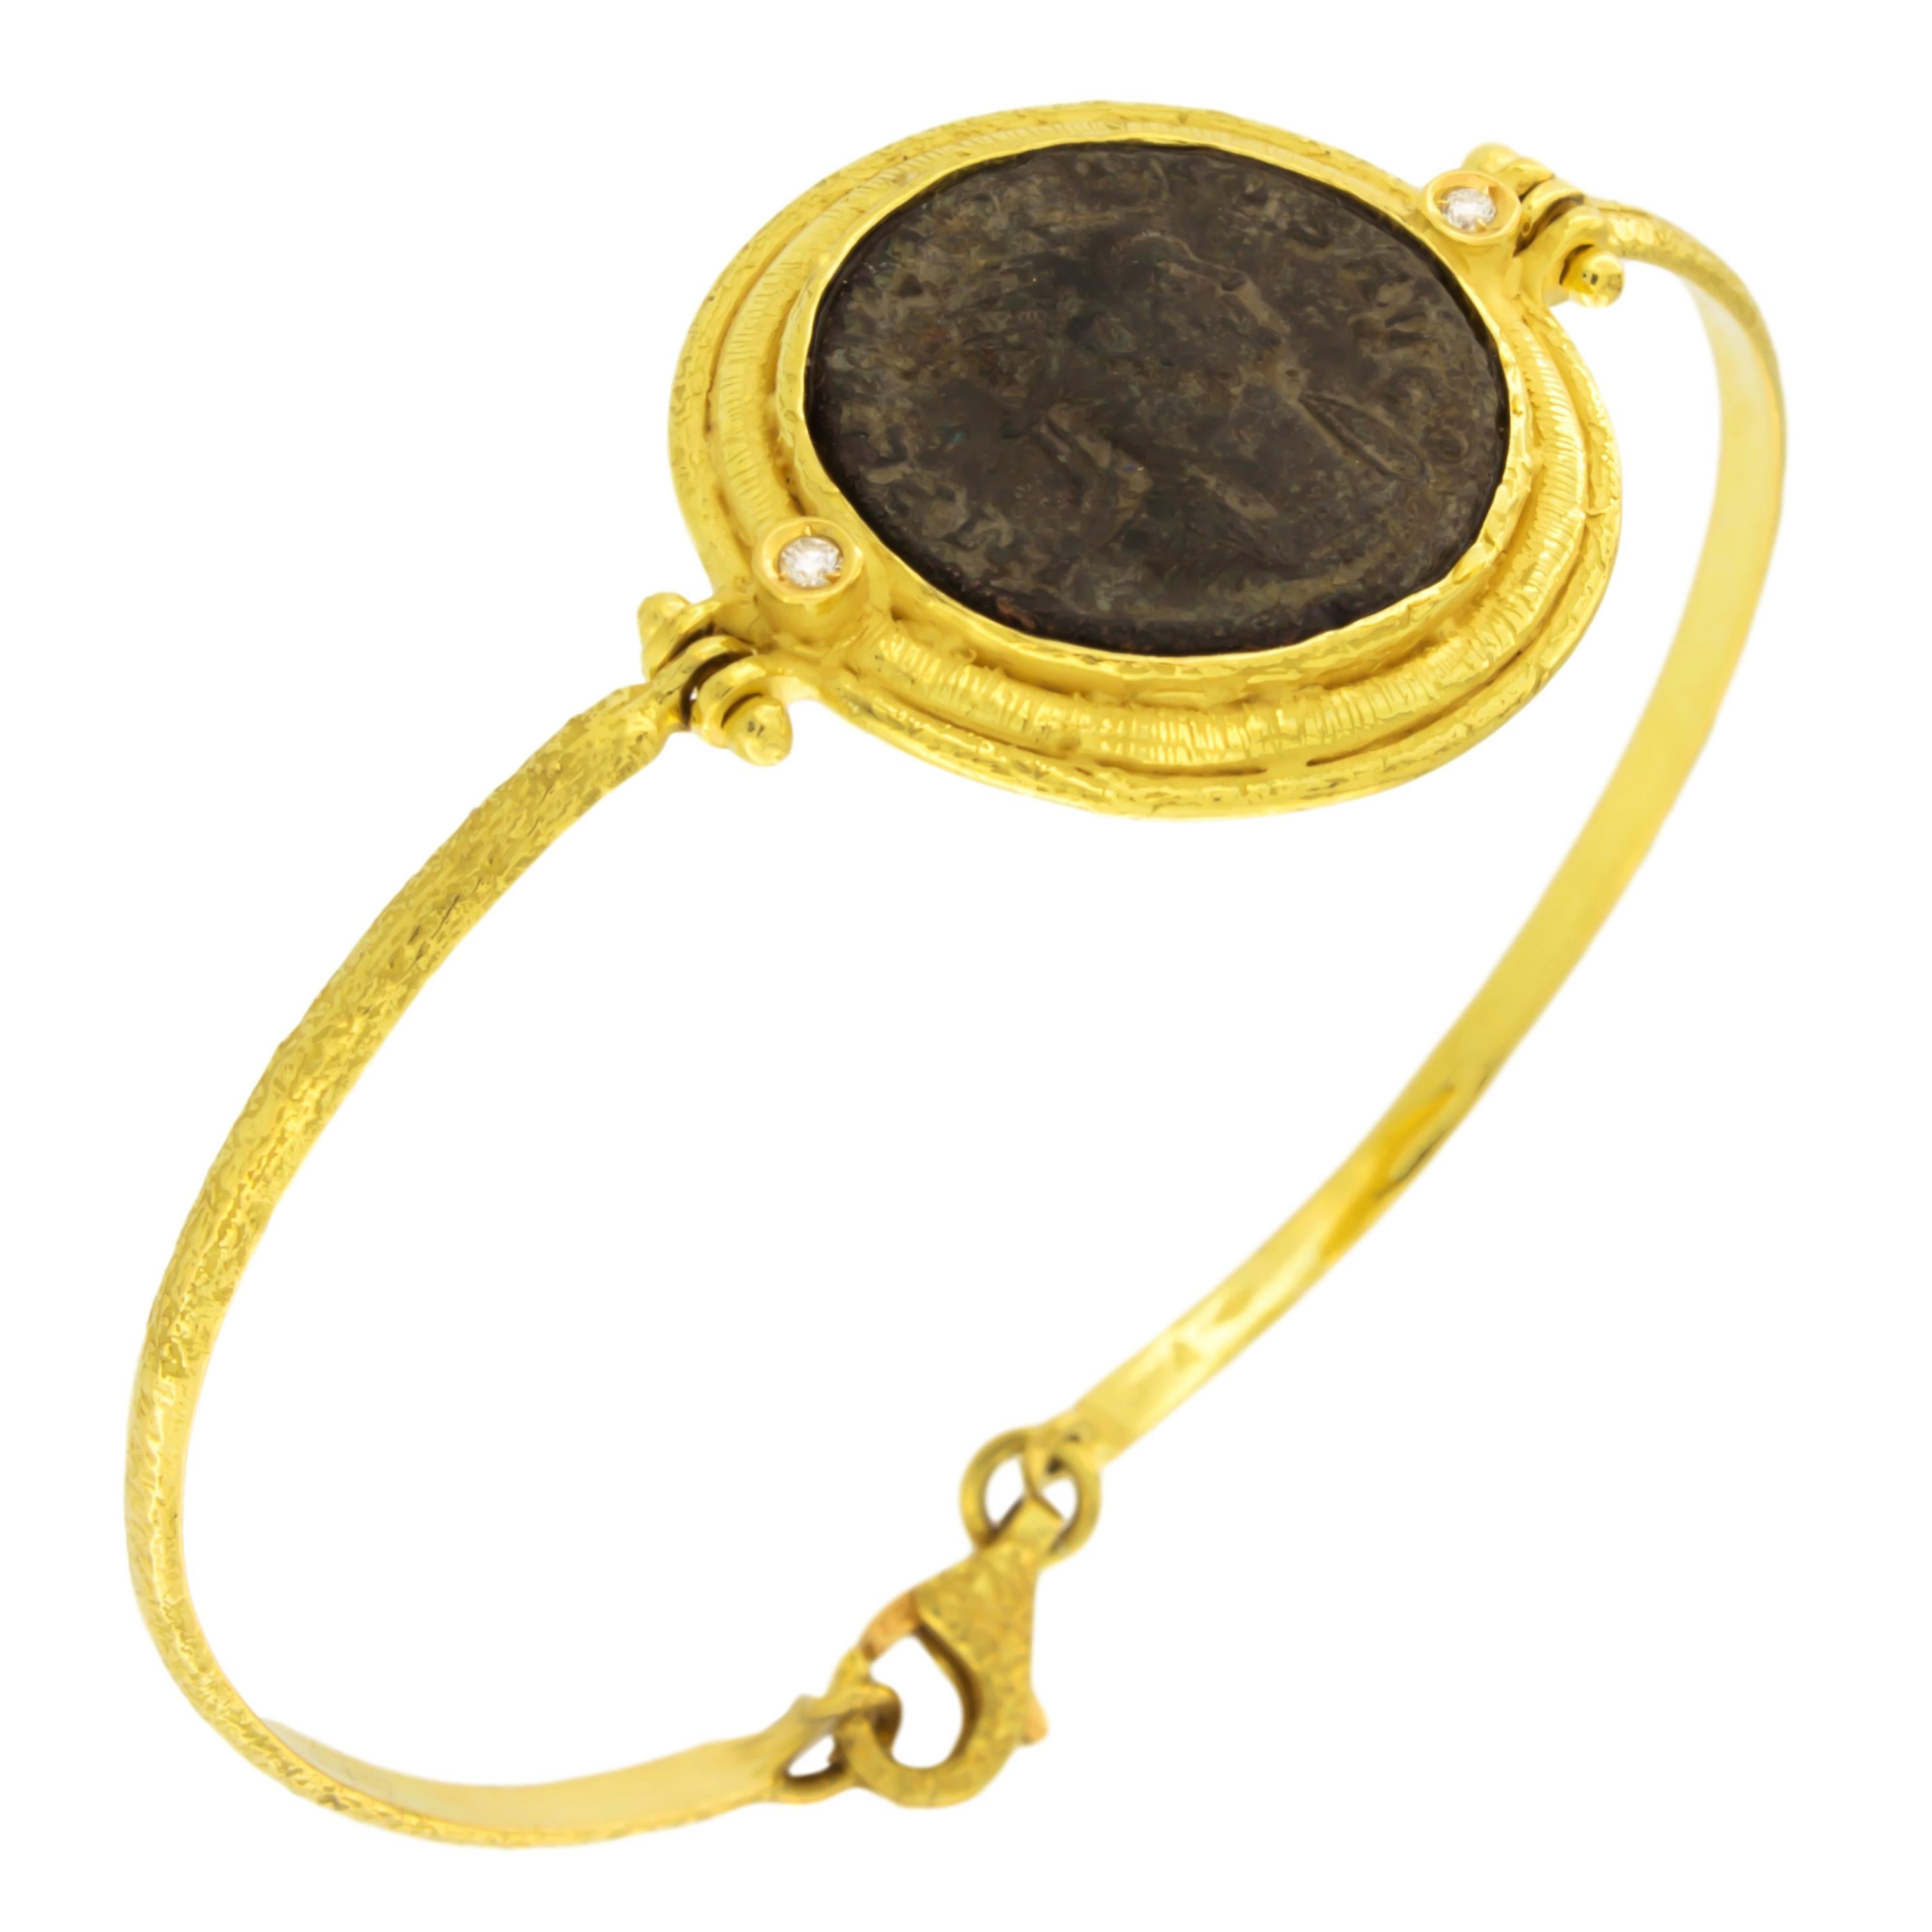 Sacchi Antike römische Münze und Diamanten Edelstein 18 Karat Gelbgold Armband